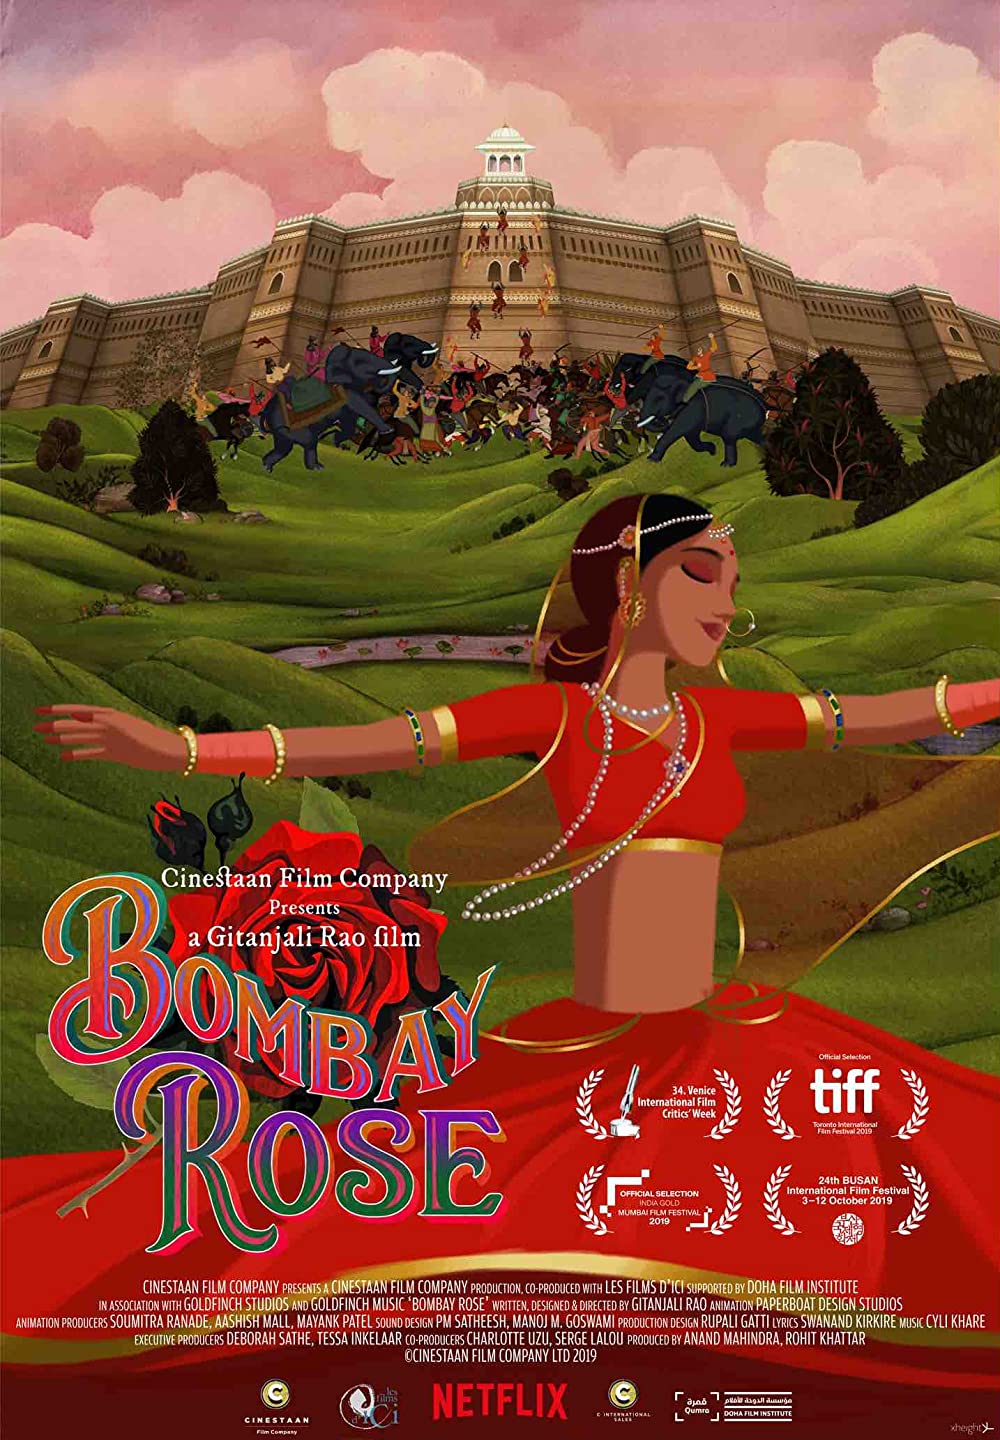 Filmbeschreibung zu Bombay Rose